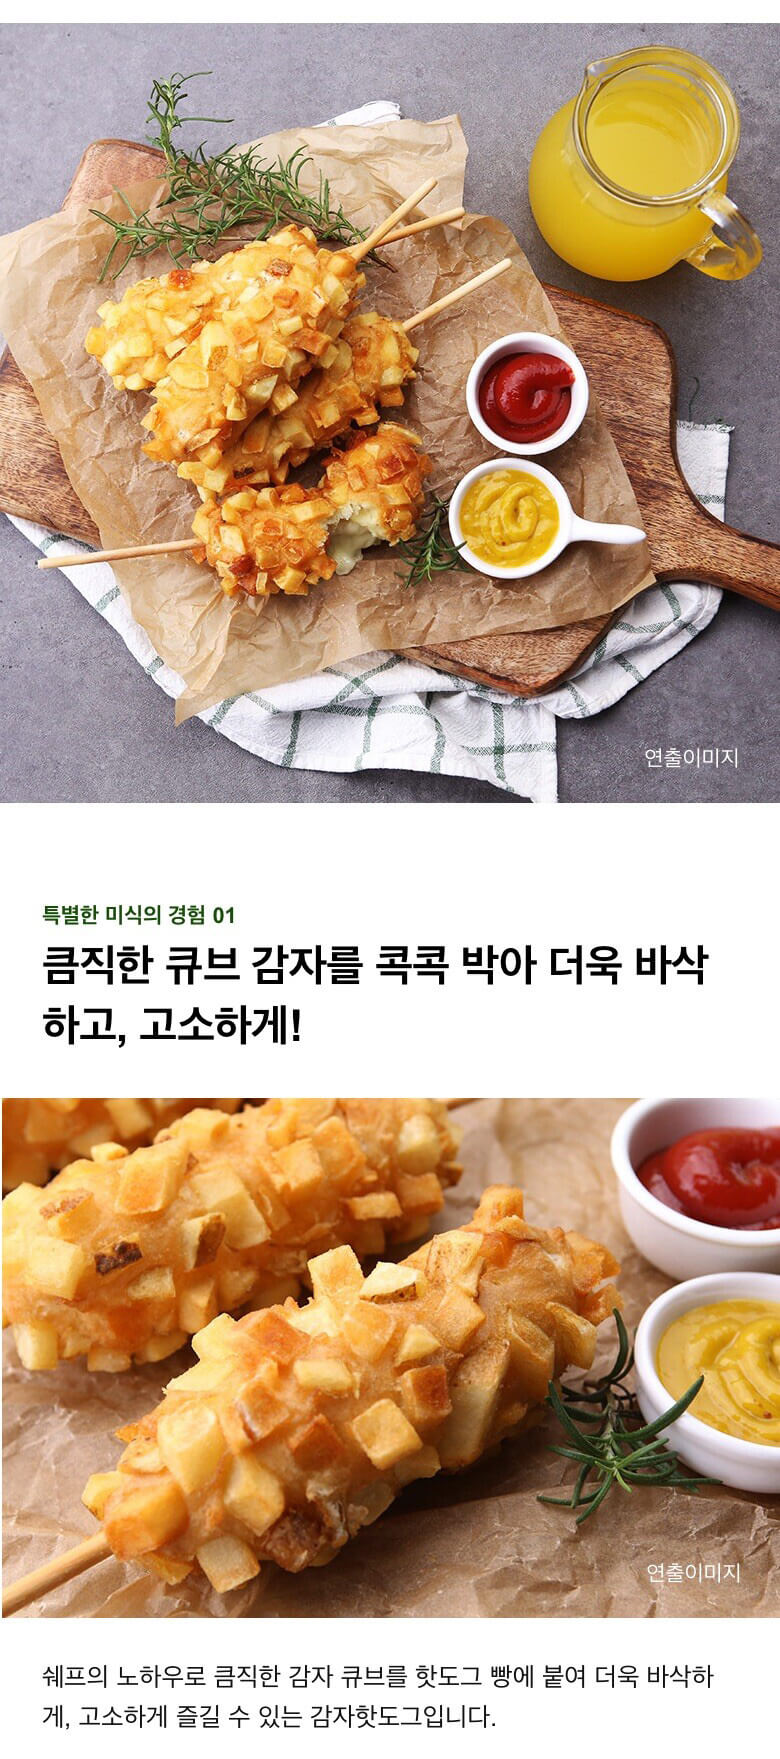 韓國食品-[CJ] 고메포테이토치즈핫도그 400g